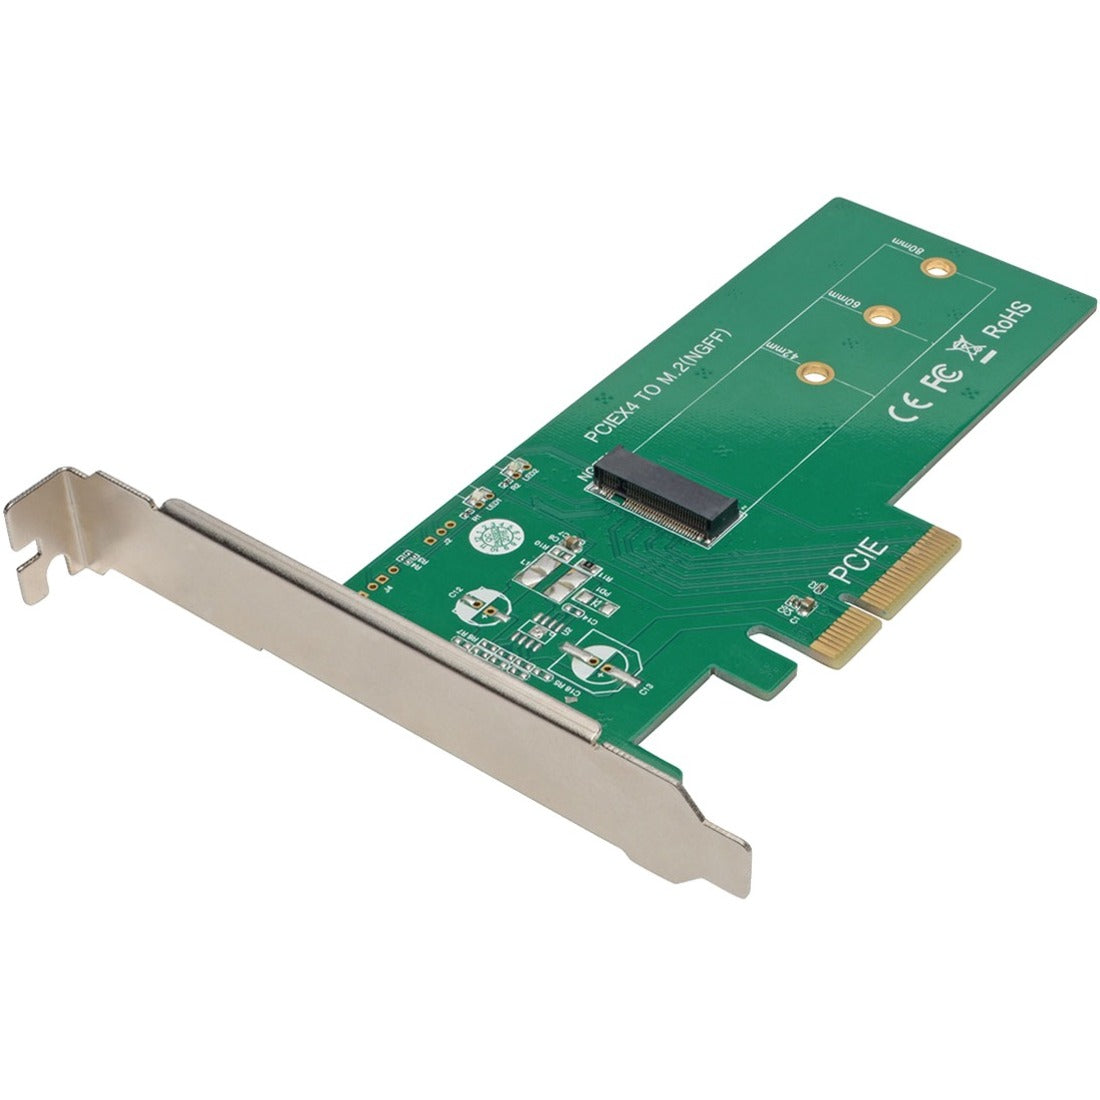 Tripp Lite by Eaton M.2 NGFF PCIe SSD (M-Key) PCI Express (x4) Card - PCE-1M2-PX4